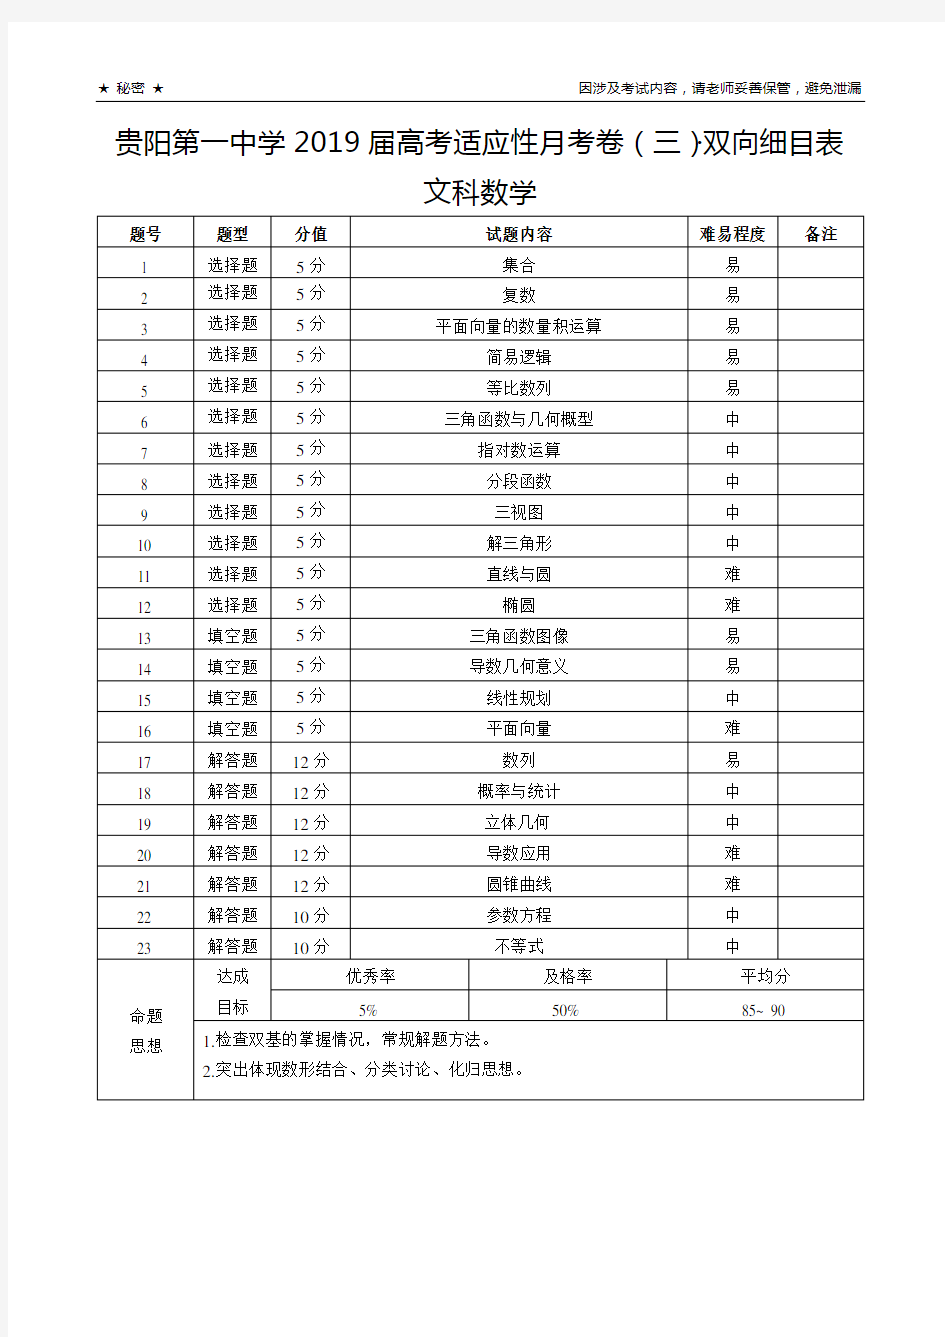 贵阳第一中学2019届高考适应性月考卷(三)文科数学-双向细目表